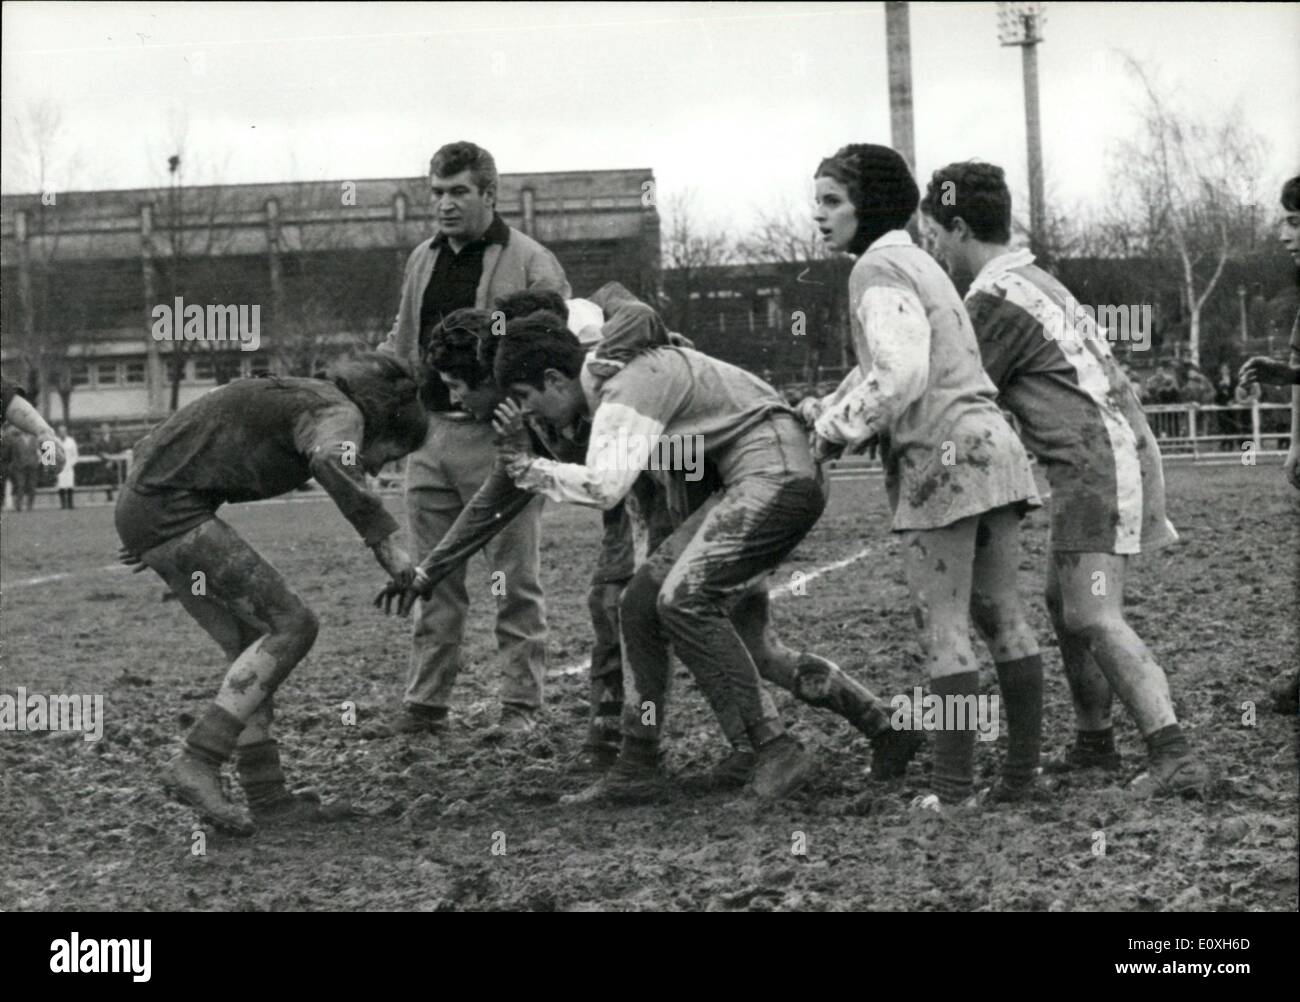 16 déc., 1966 - célèbre Rugbyman comme 'Ladies' arbitre Amédée Domenech,  France's top rugbyman, a agi comme arbitre dans un match de rugby joué  dames à Limoges, le centre de la France